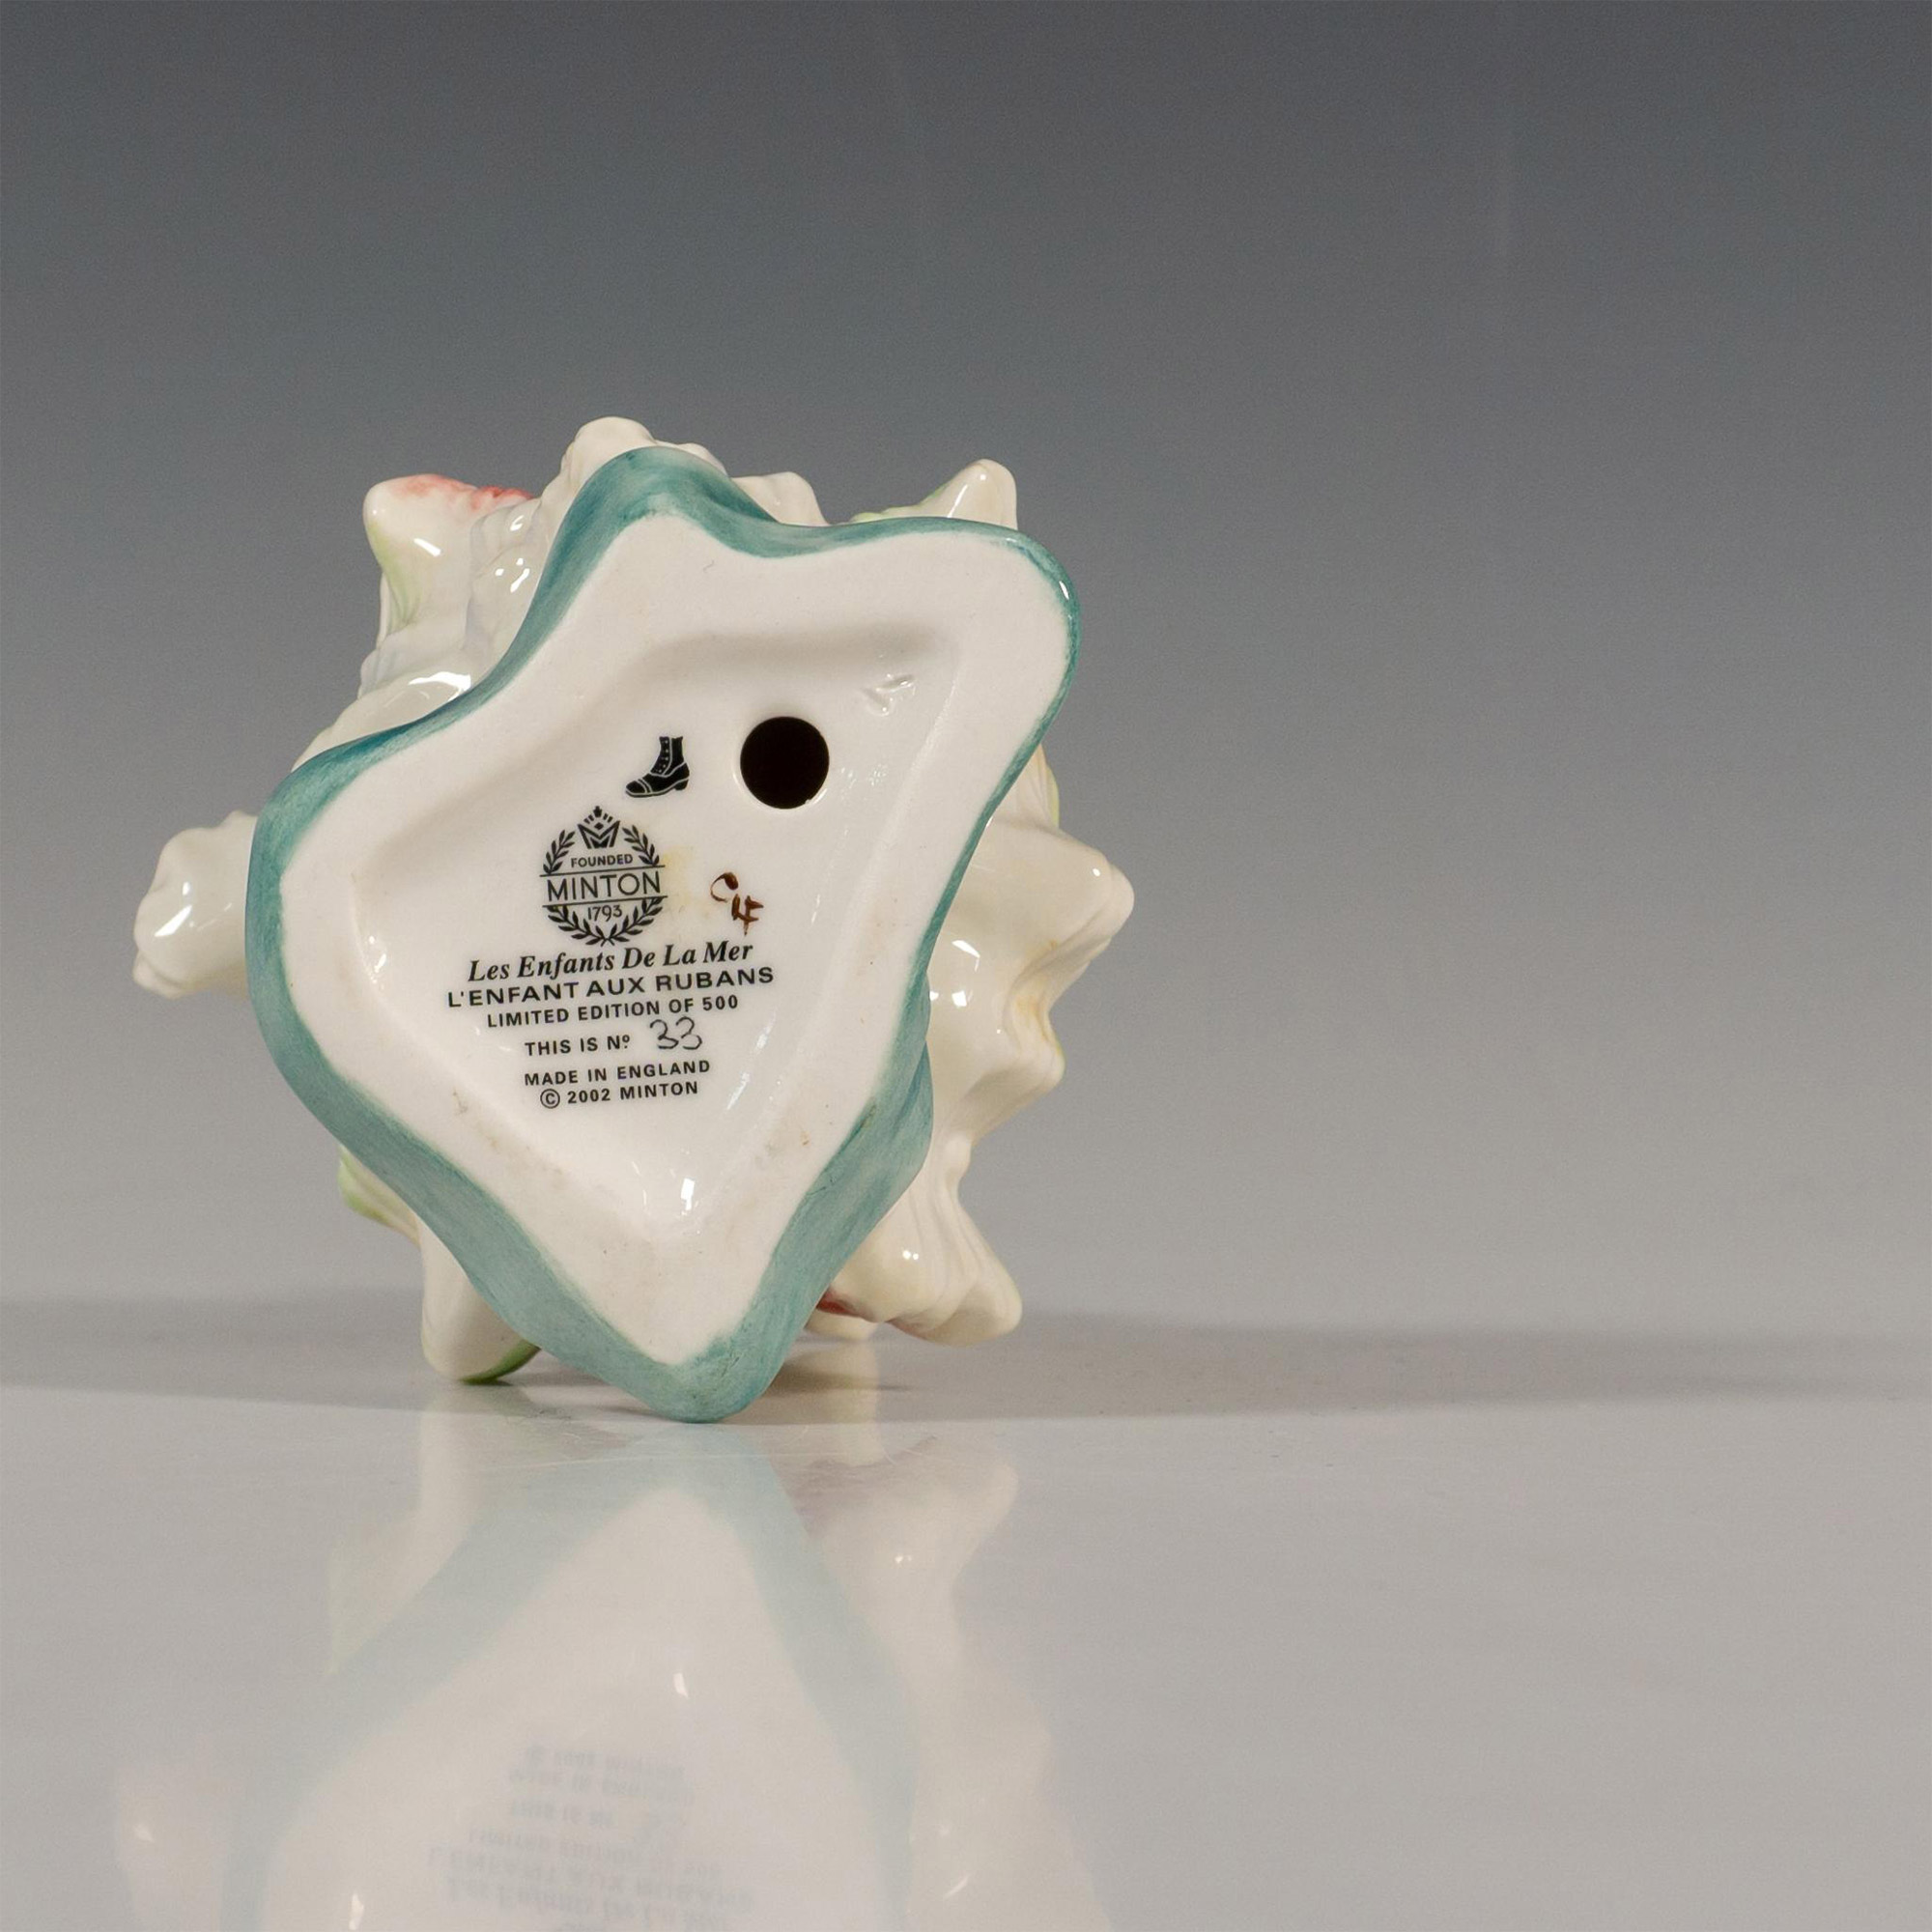 Minton Porcelain Figurine, L'enfant Aux Rubans - Image 5 of 5